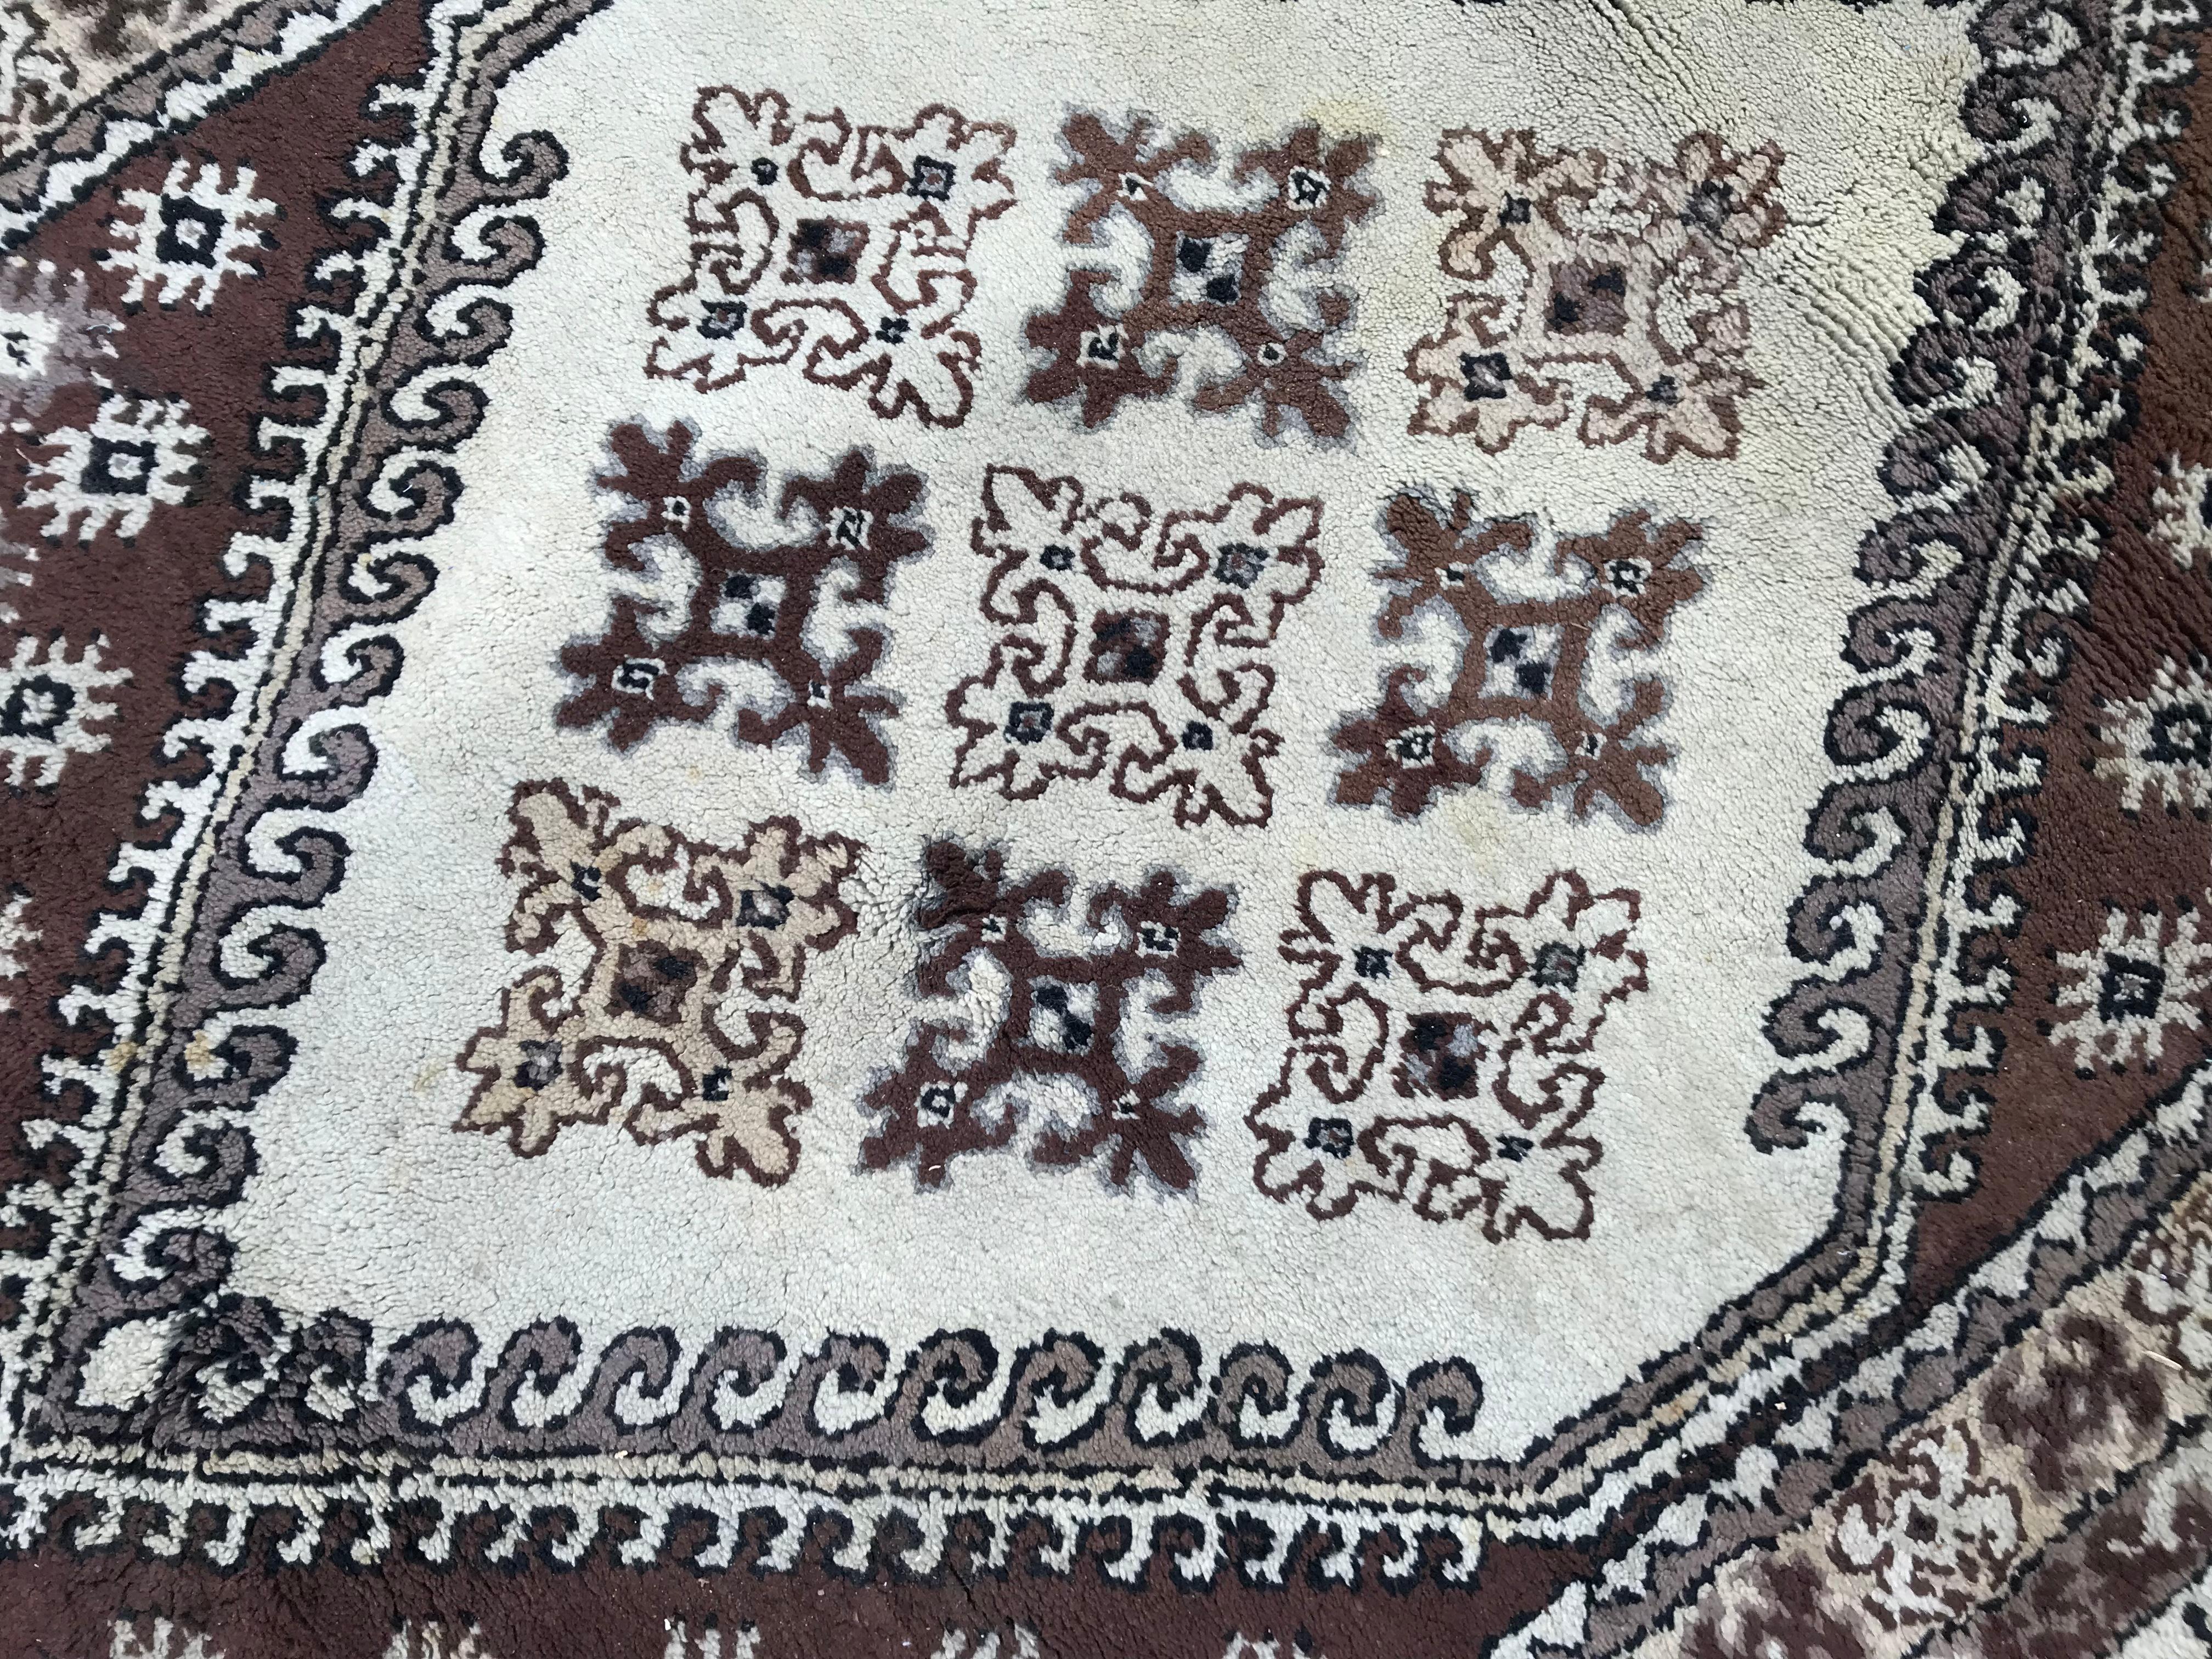 Tapis marocain vintage avec un joli design géométrique Berbère et des couleurs claires avec du beige, jaune noir, violet et marron, entièrement noué à la main avec de la laine velours sur des fondations en coton. Mesures : 5ft 3in x 8ft.